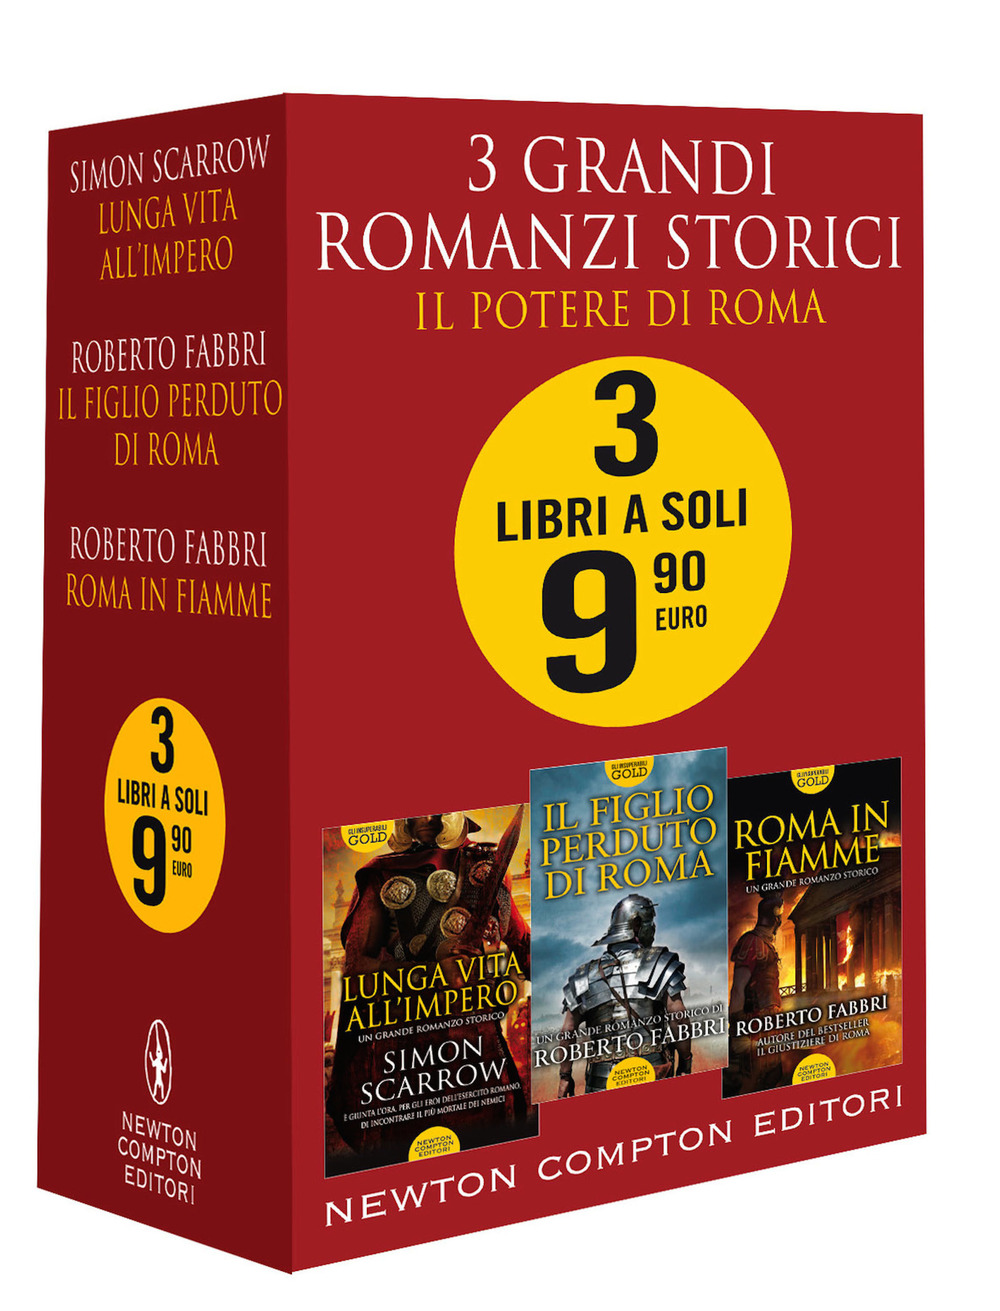 Image of 3 grandi romanzi storici. Il potere di Roma: Roma in fiamme-Il figlio perduto di Roma-Lunga vita all'impero